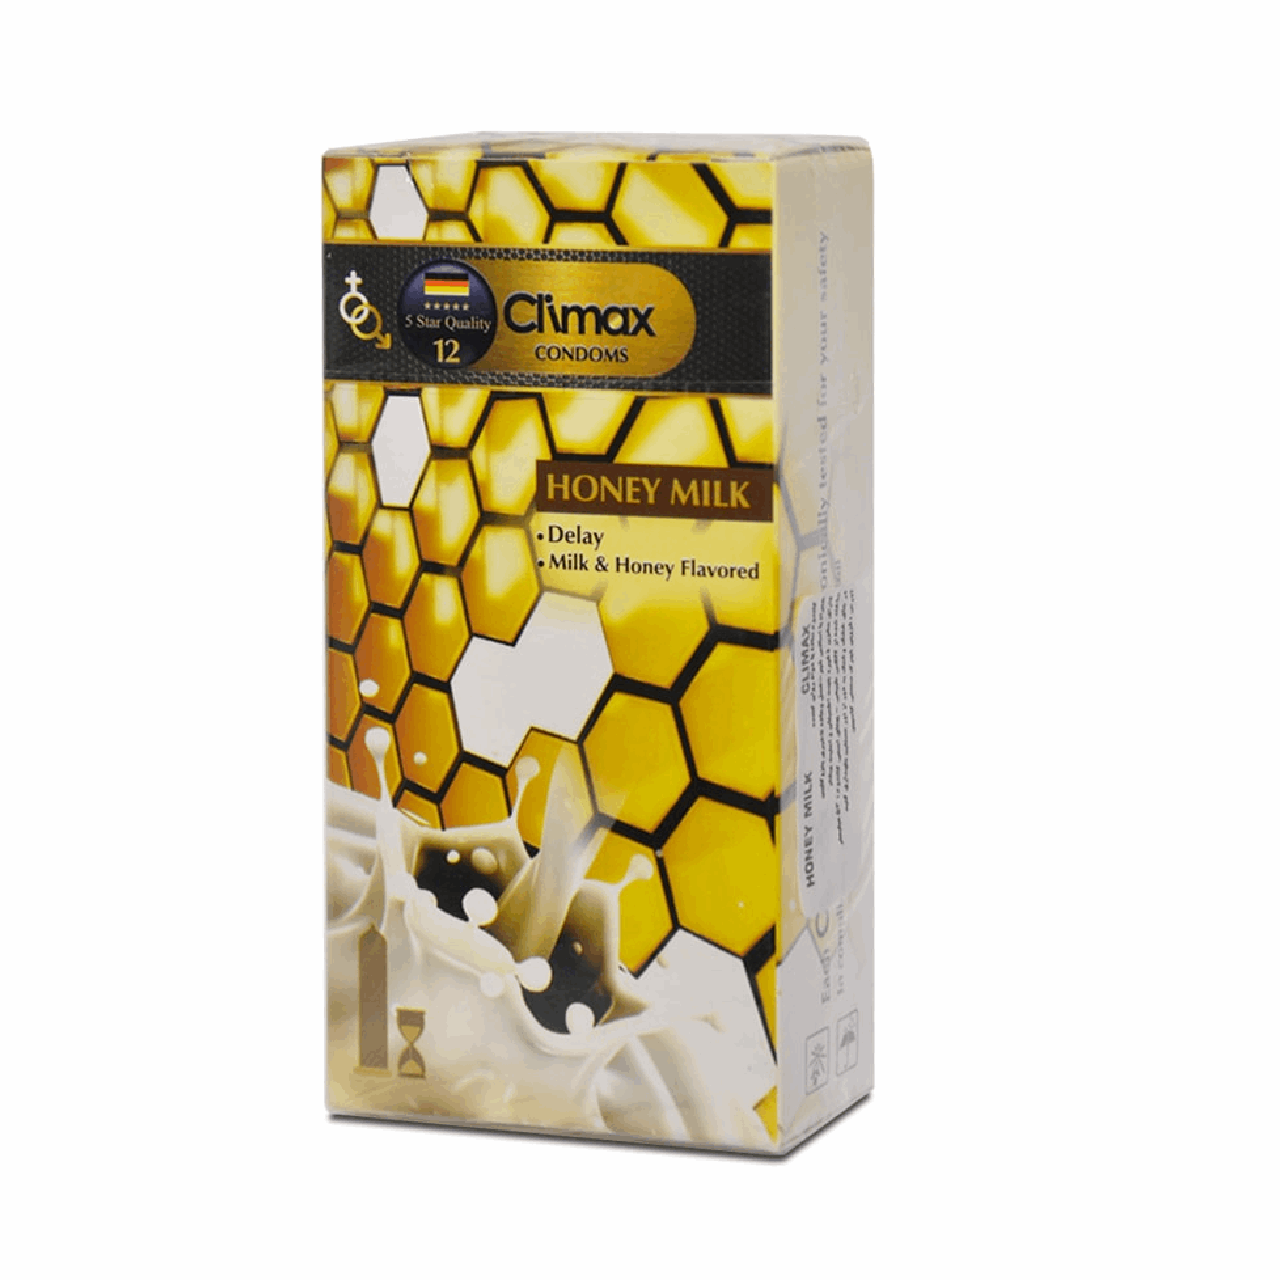 نکته خرید - قیمت روز کاندوم کلایمکس مدل Honey Milk 12 بسته 12 عددی خرید